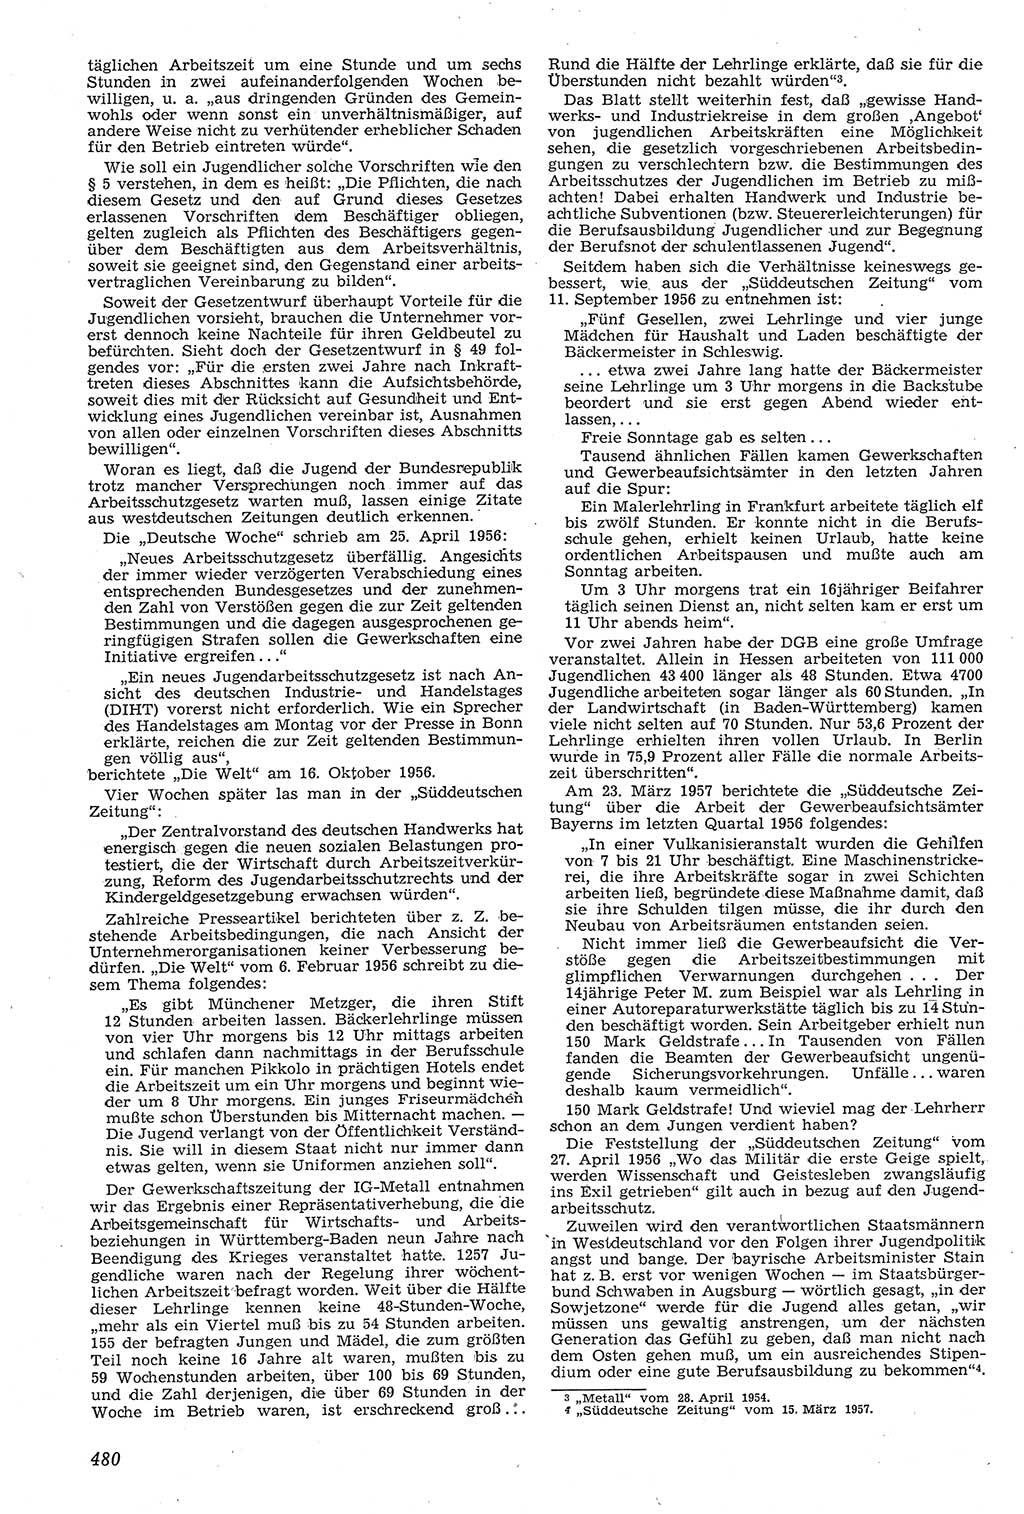 Neue Justiz (NJ), Zeitschrift für Recht und Rechtswissenschaft [Deutsche Demokratische Republik (DDR)], 11. Jahrgang 1957, Seite 480 (NJ DDR 1957, S. 480)